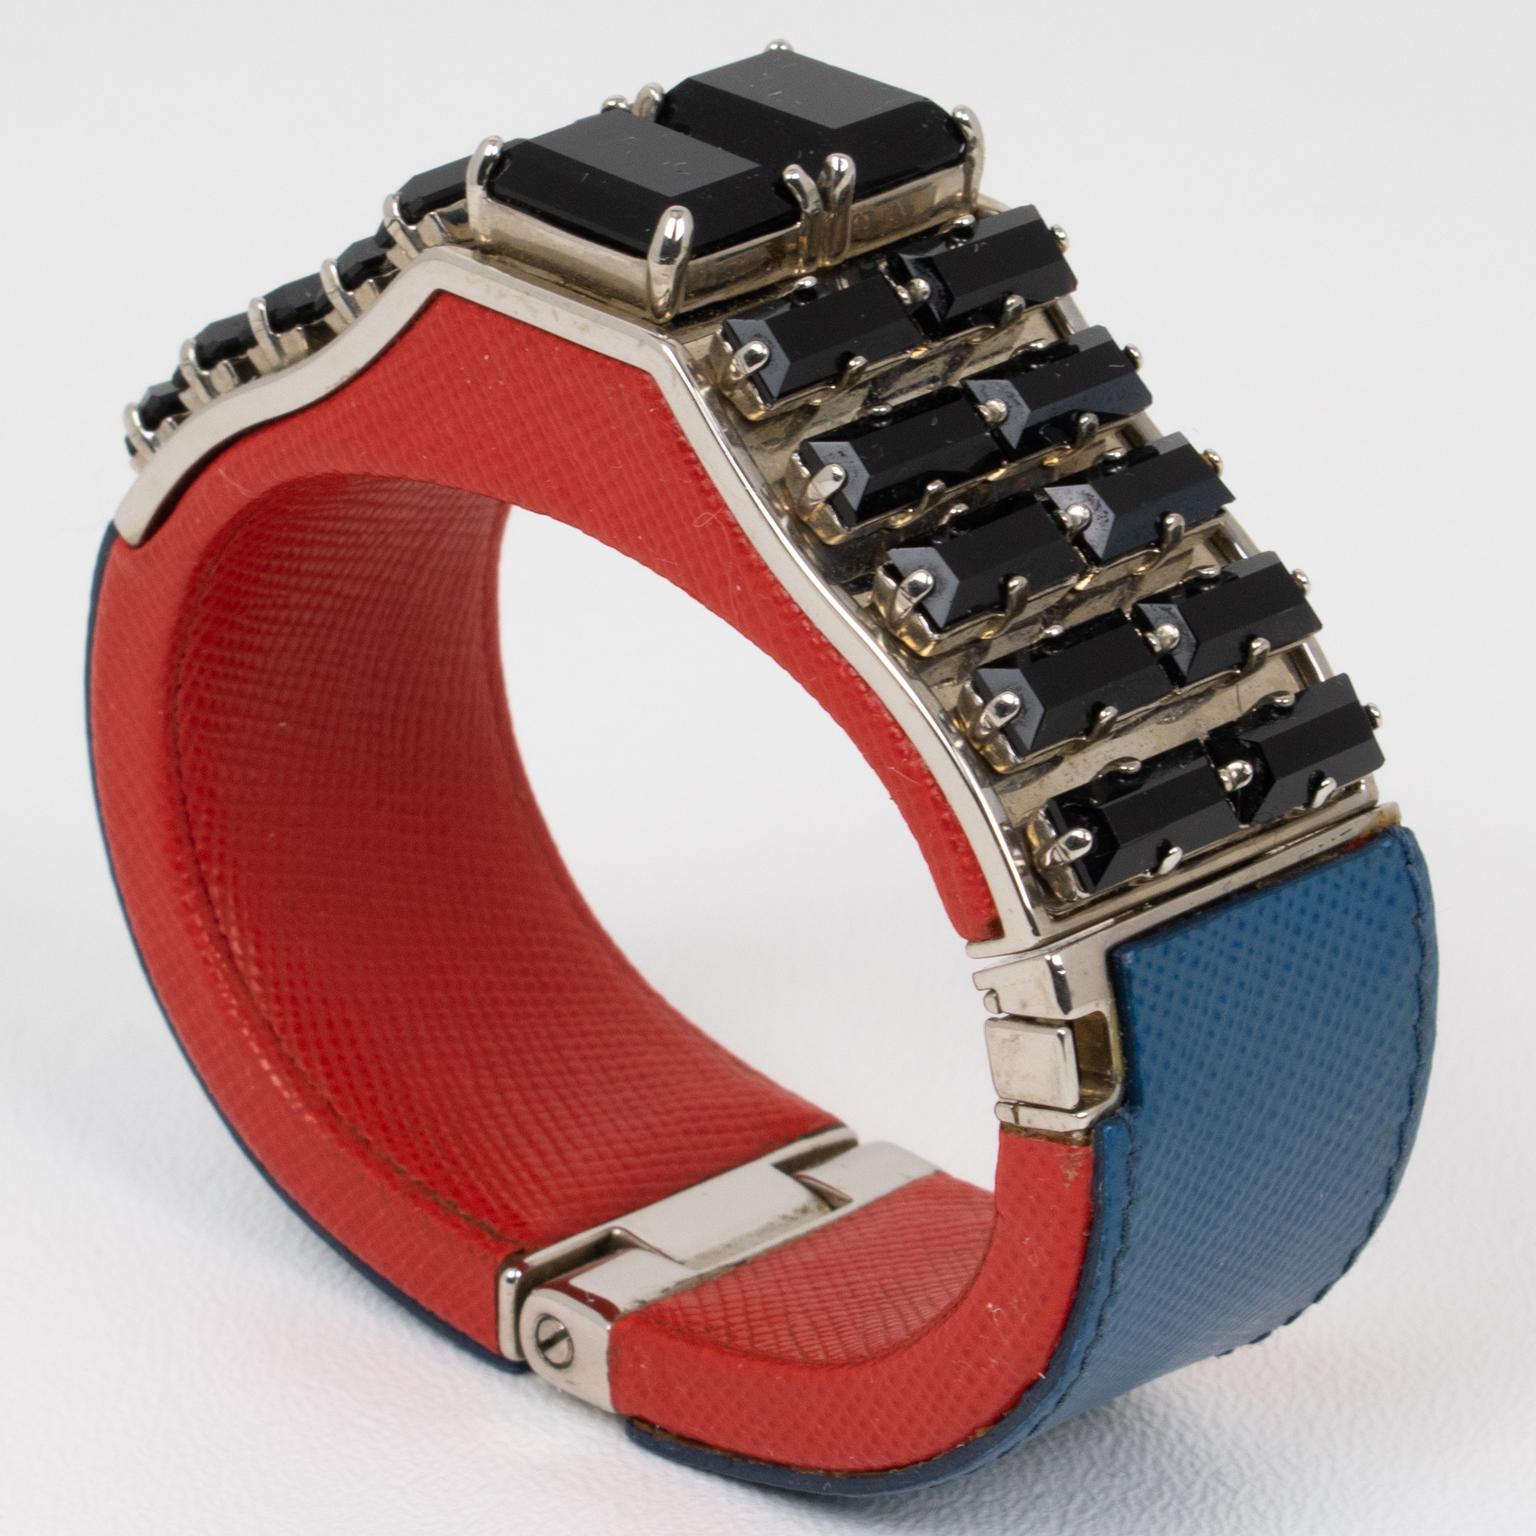 Das italienische Unternehmen Prada entwarf dieses außergewöhnliche Armband für seine Frühjahr/Sommer-Laufstegshows 2014 für Konfektionskleidung und Resorts. Dieses auffällige Accessoire kombiniert die luxuriöse Ausstrahlung von blauem und rotem